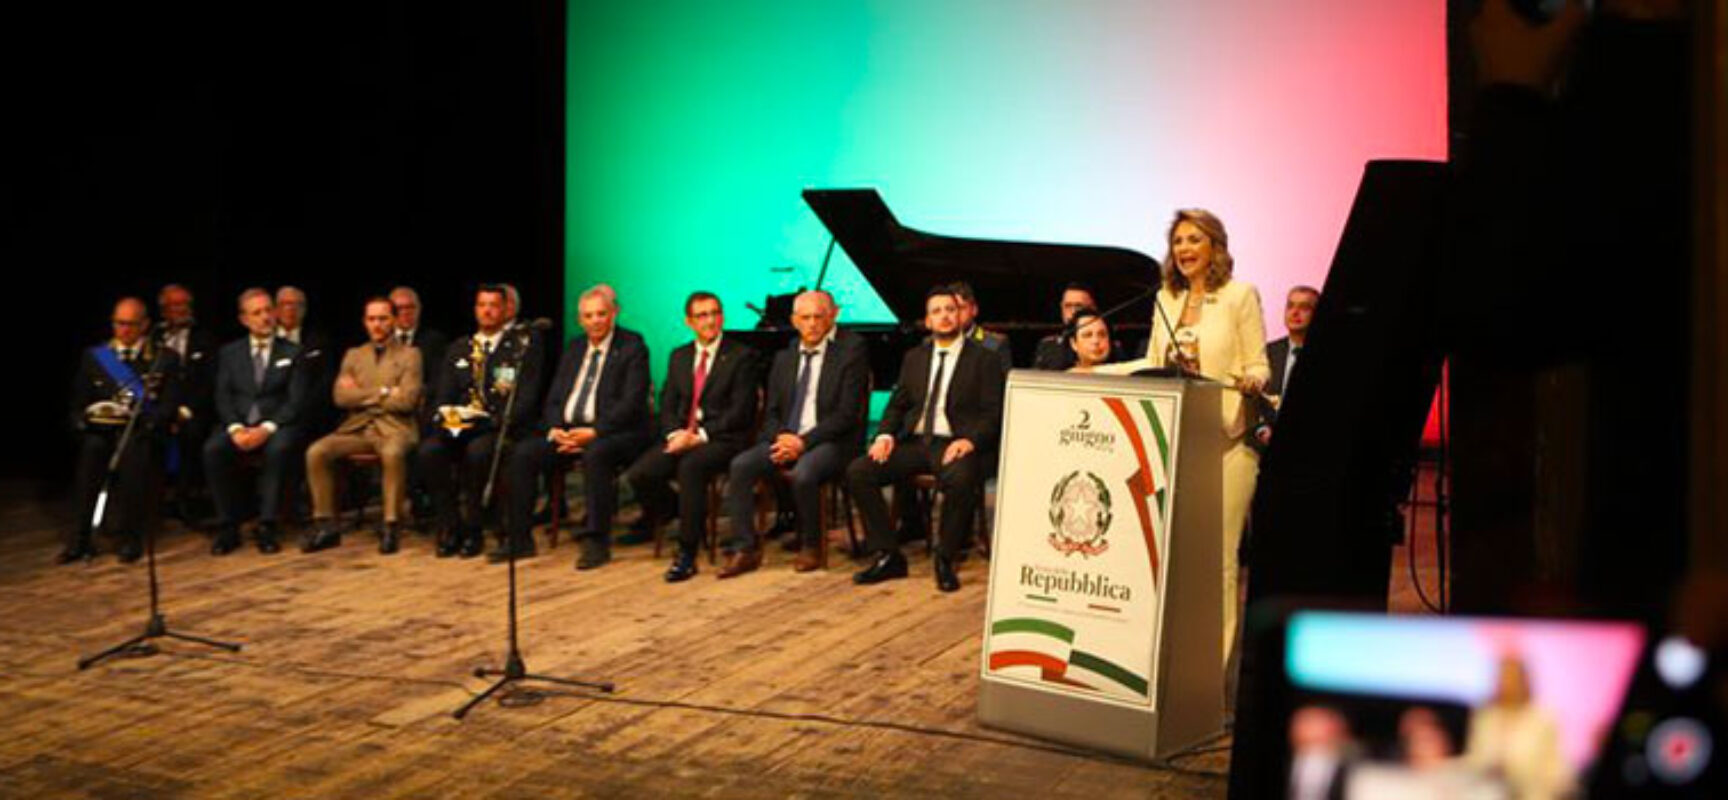 Conferite onorificenze al Merito della Repubblica Italiana: tre i biscegliesi insigniti